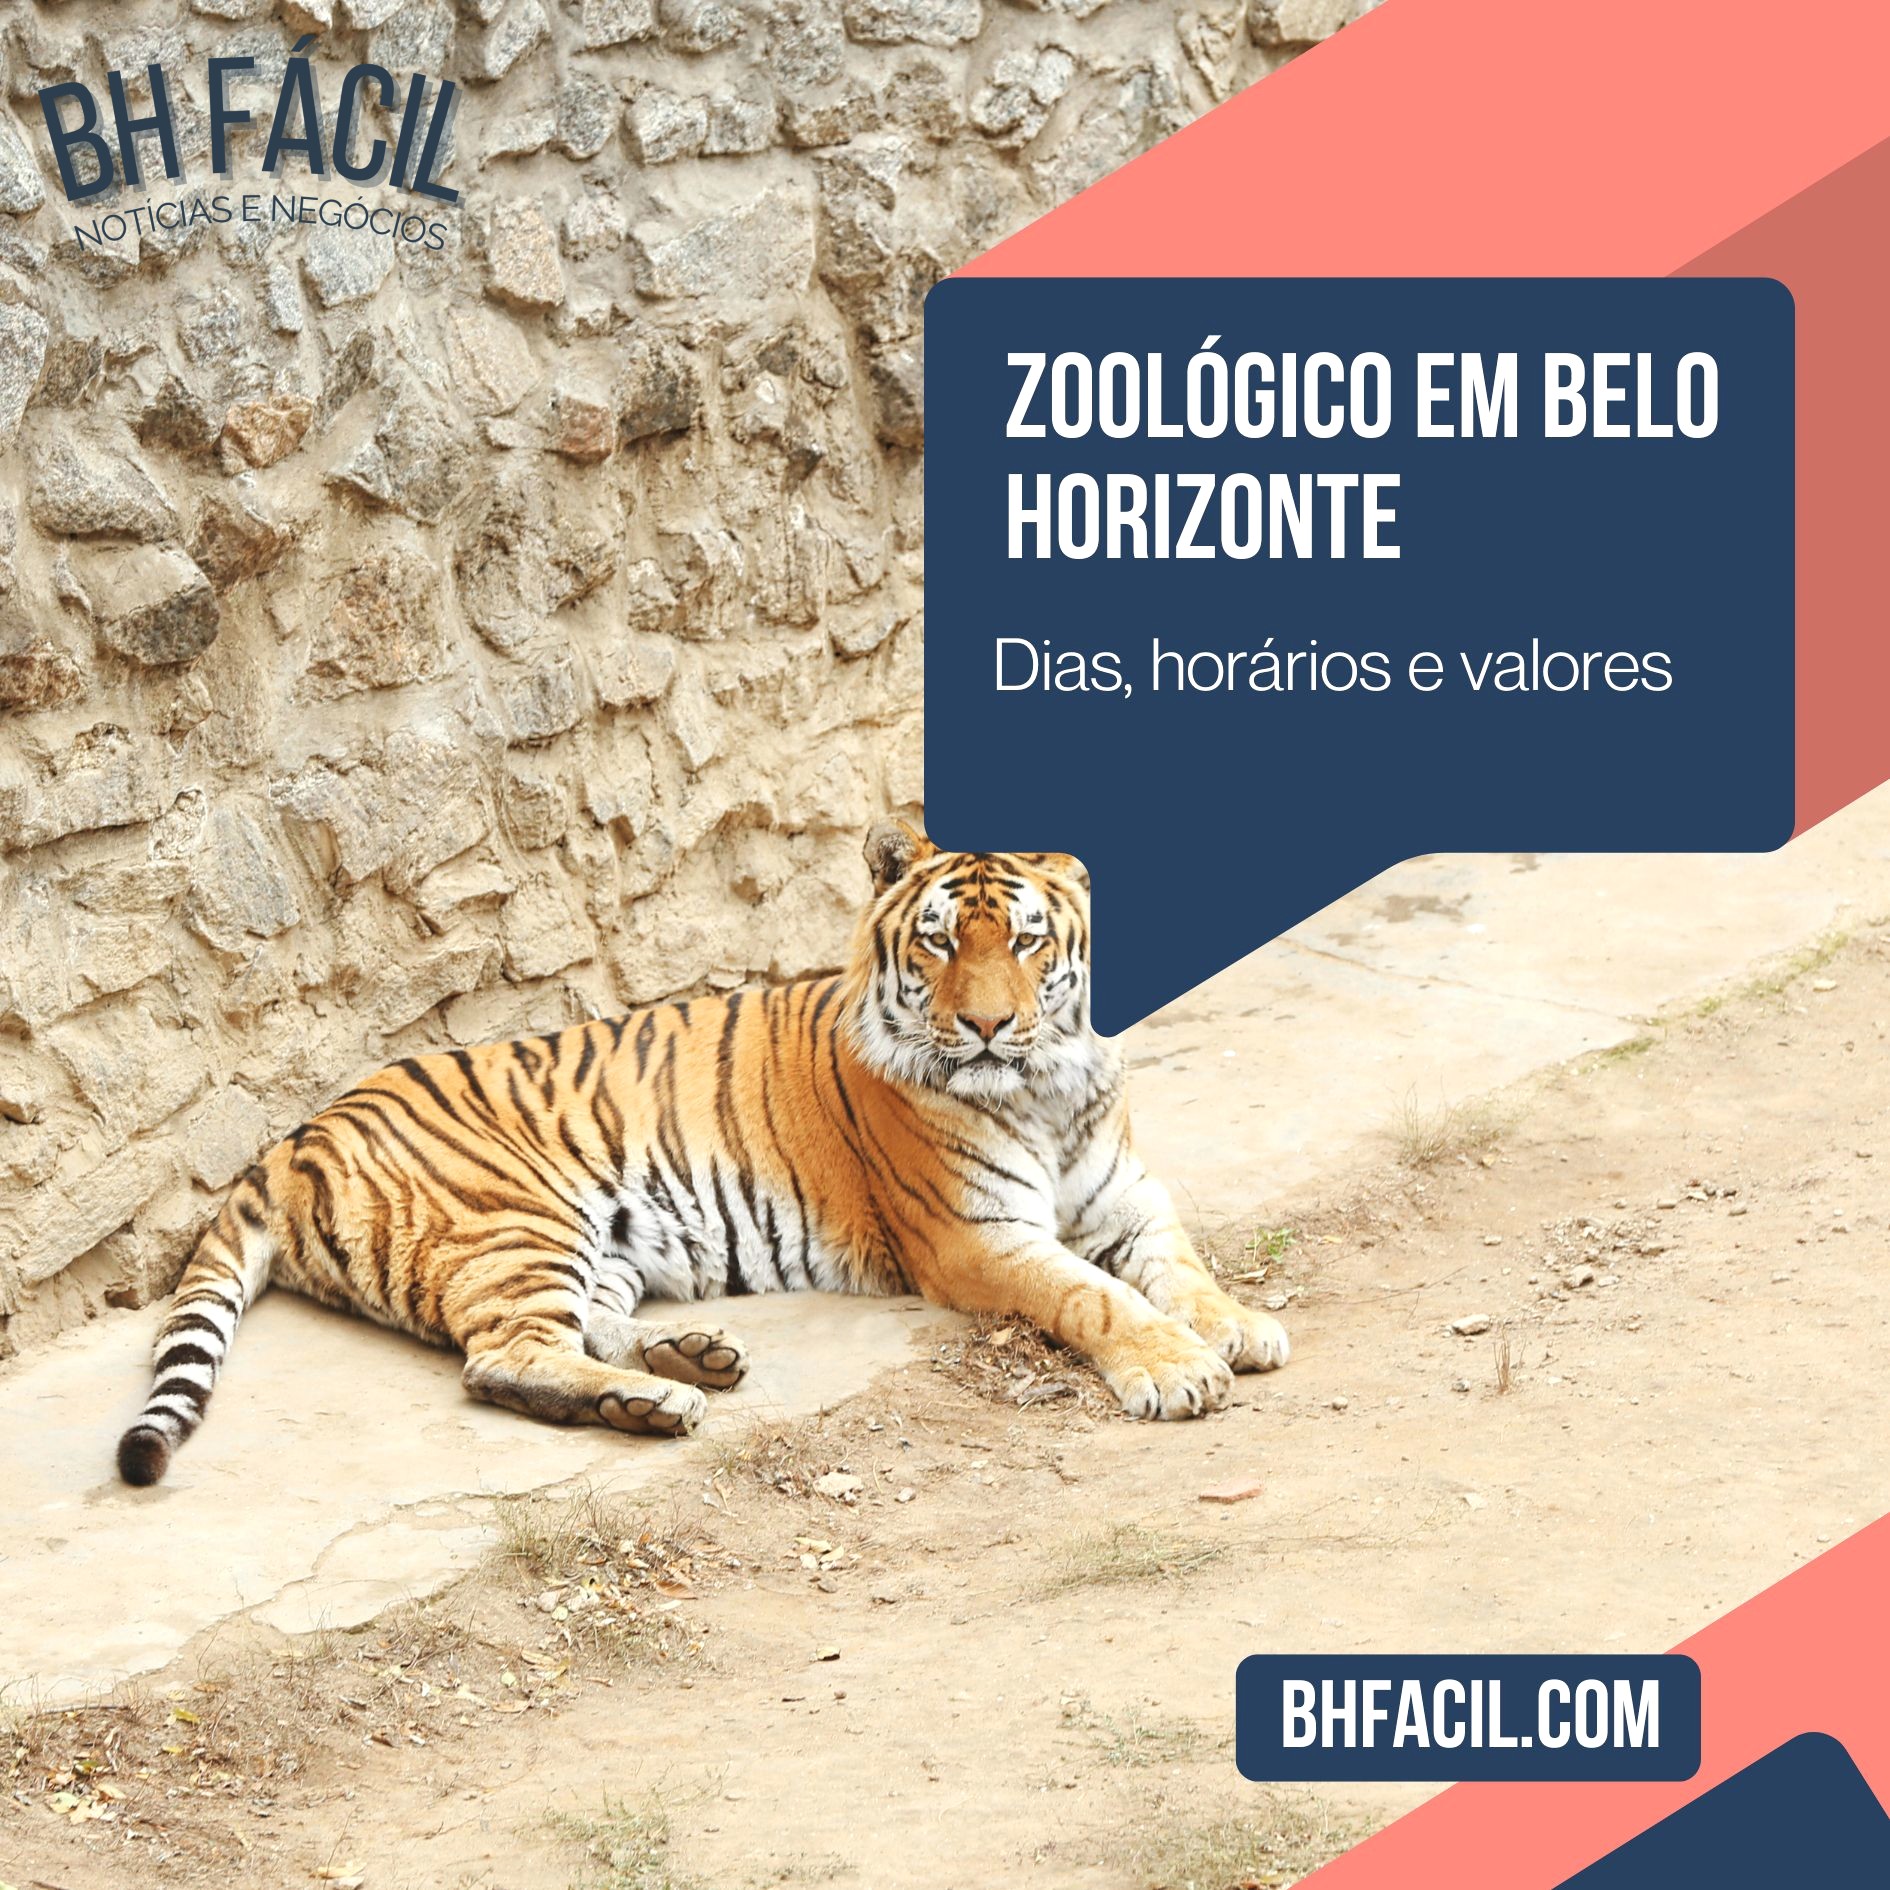 Zoológico de Belo Horizonte: Passeio com a família e crianças